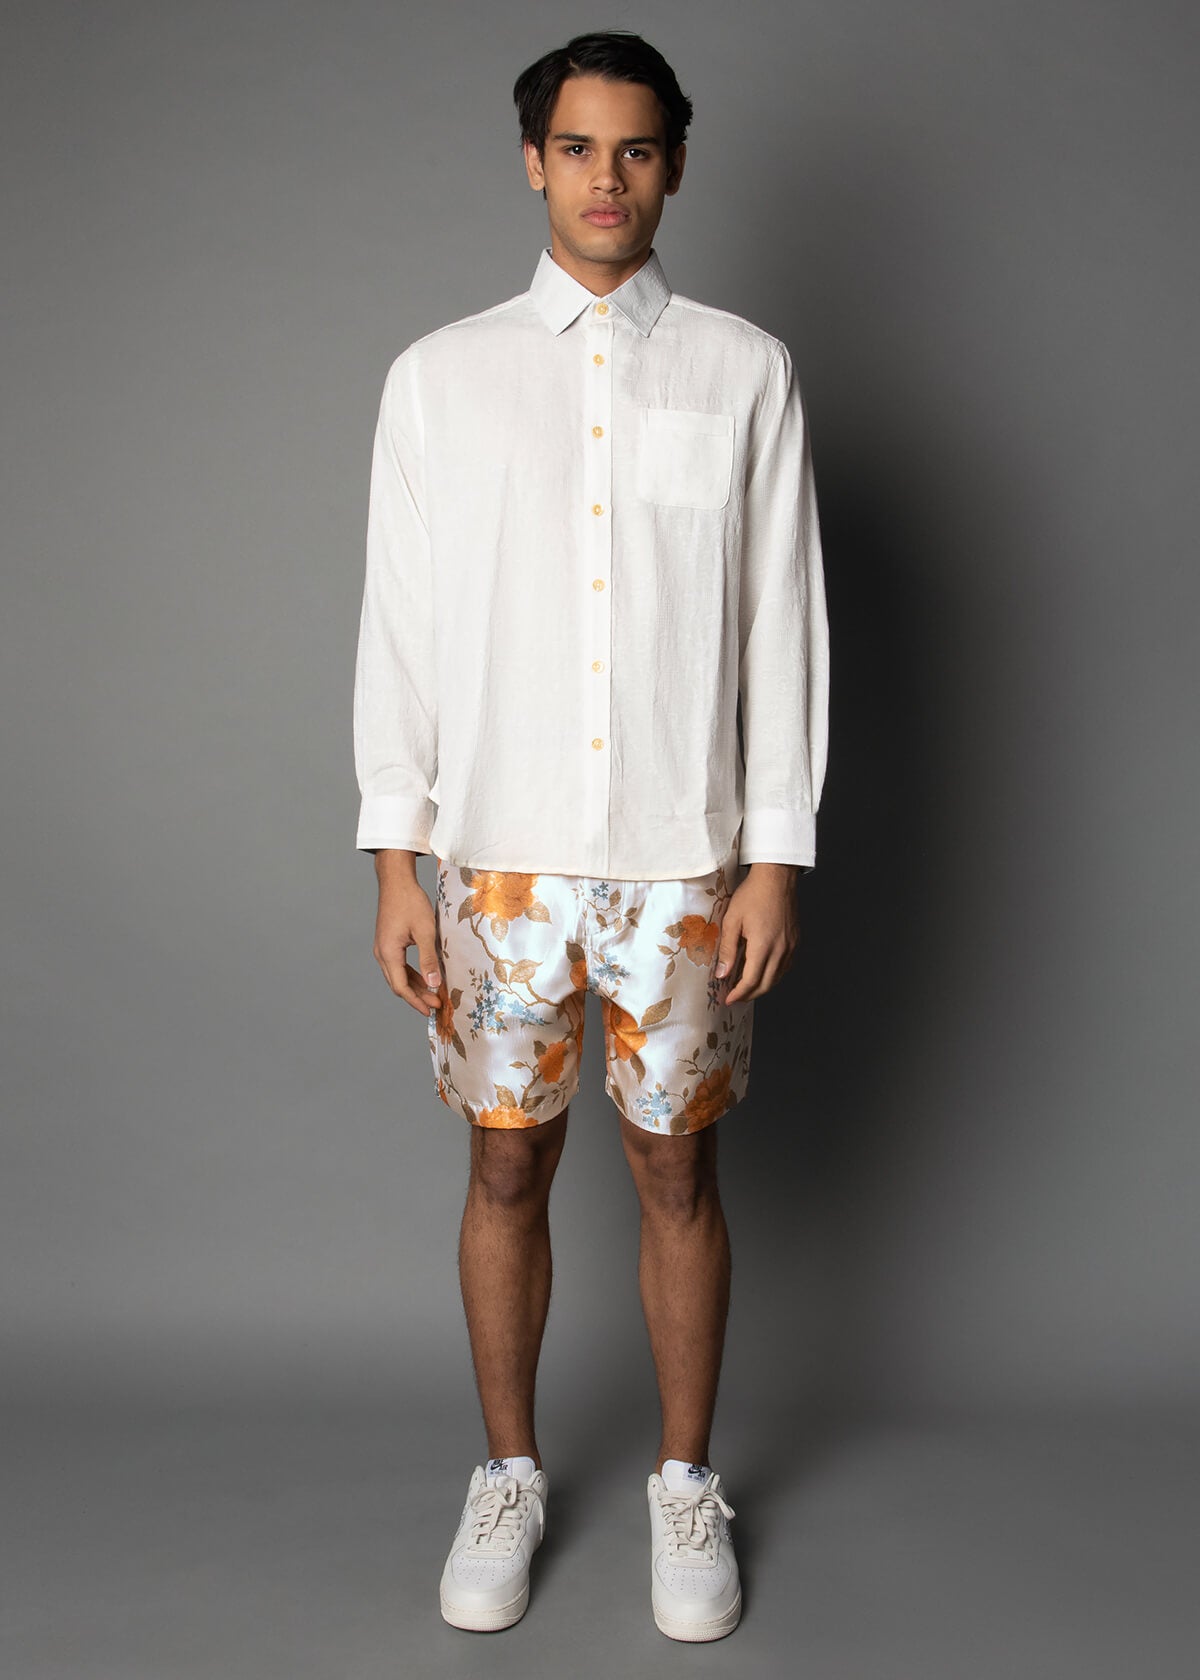 floral pattern brocade shorts for men